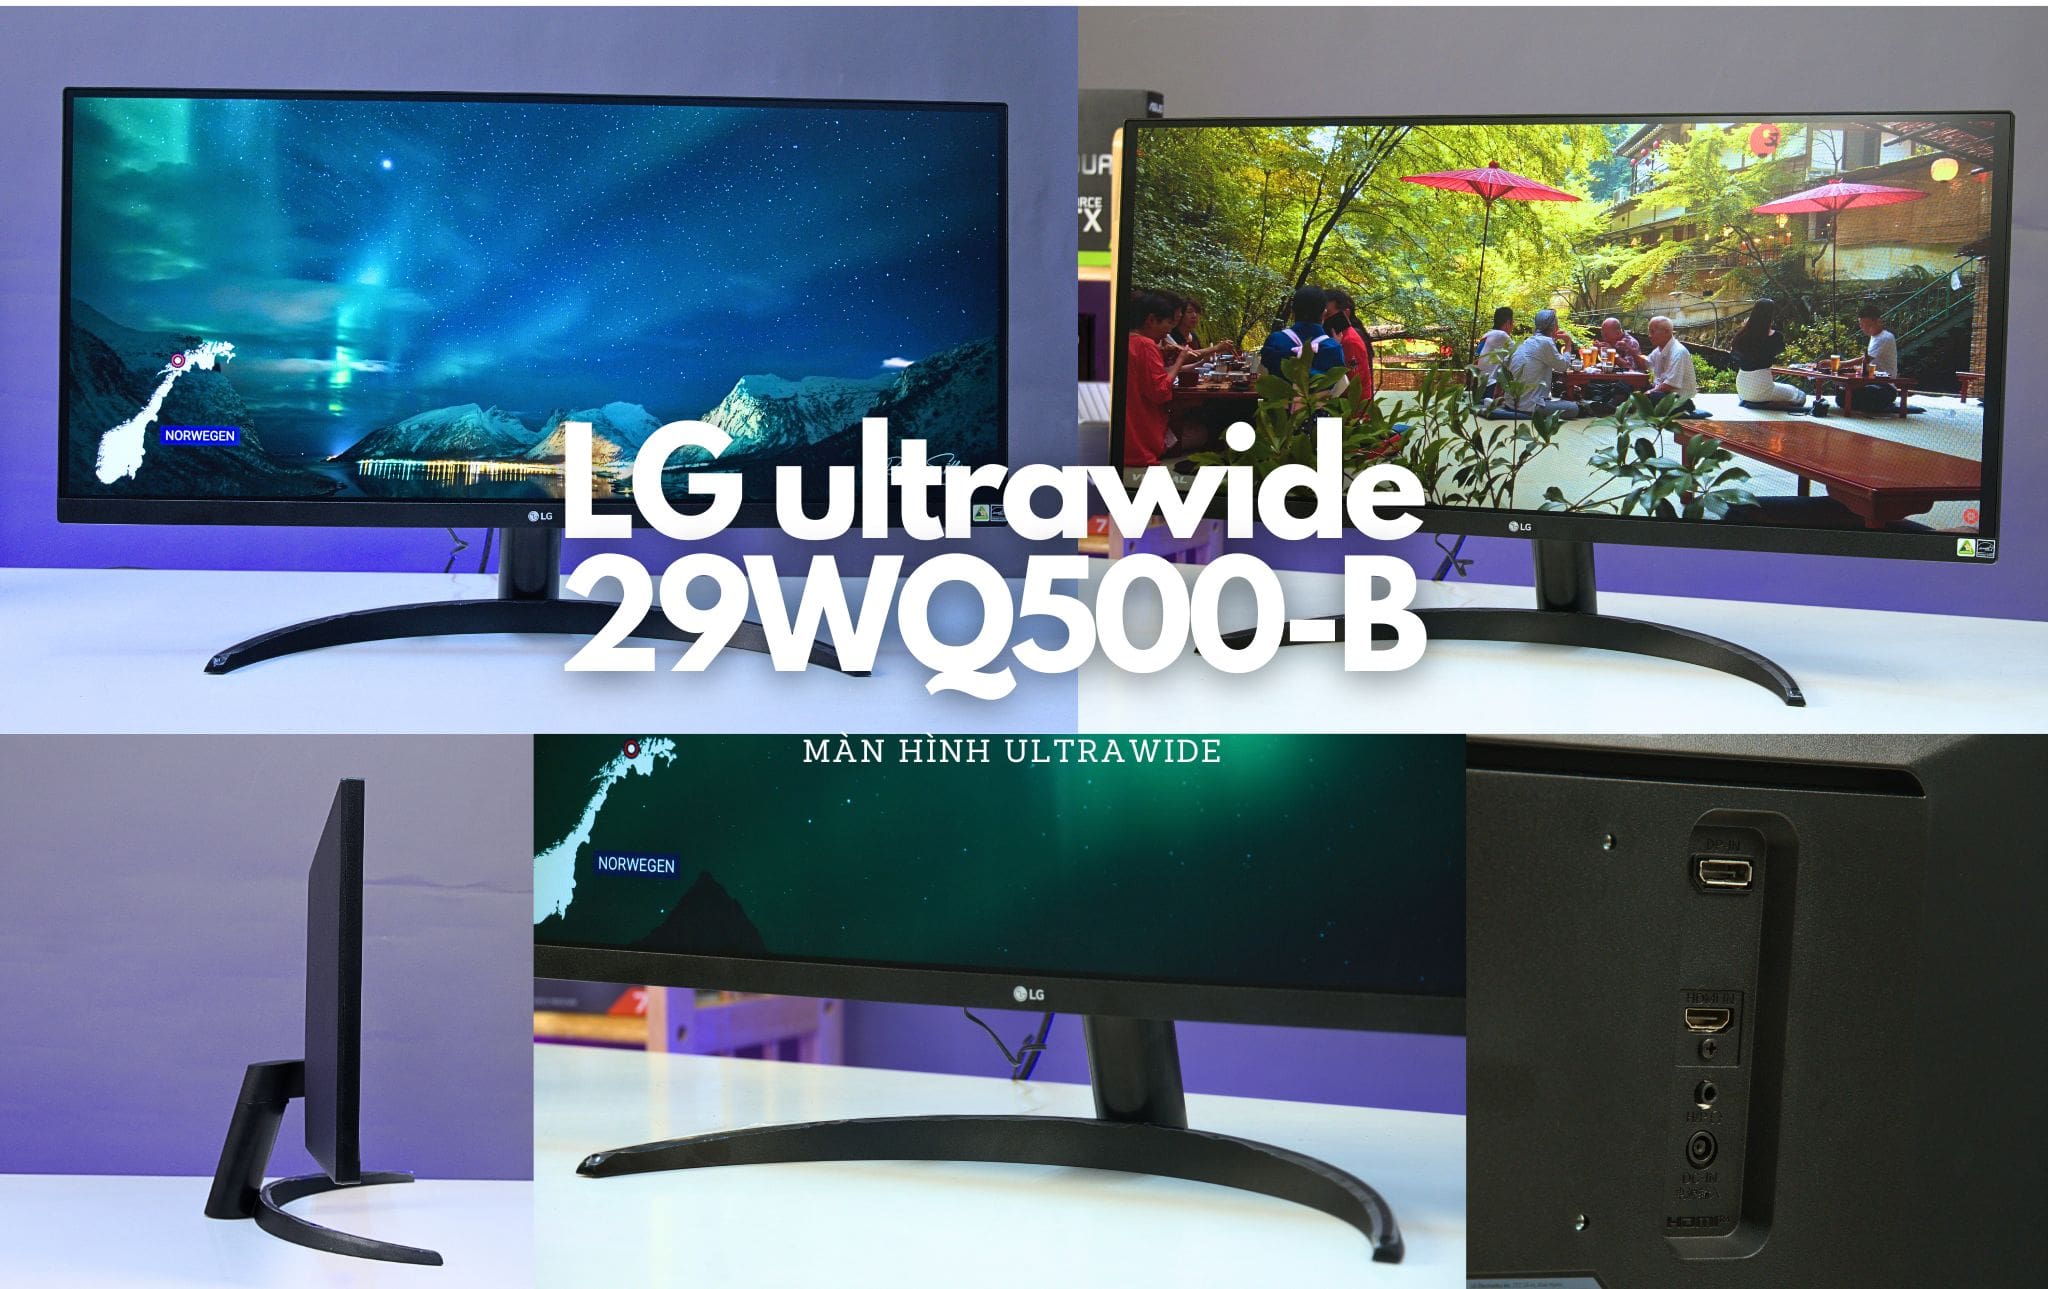 LG ultrawide 29WQ500-B 